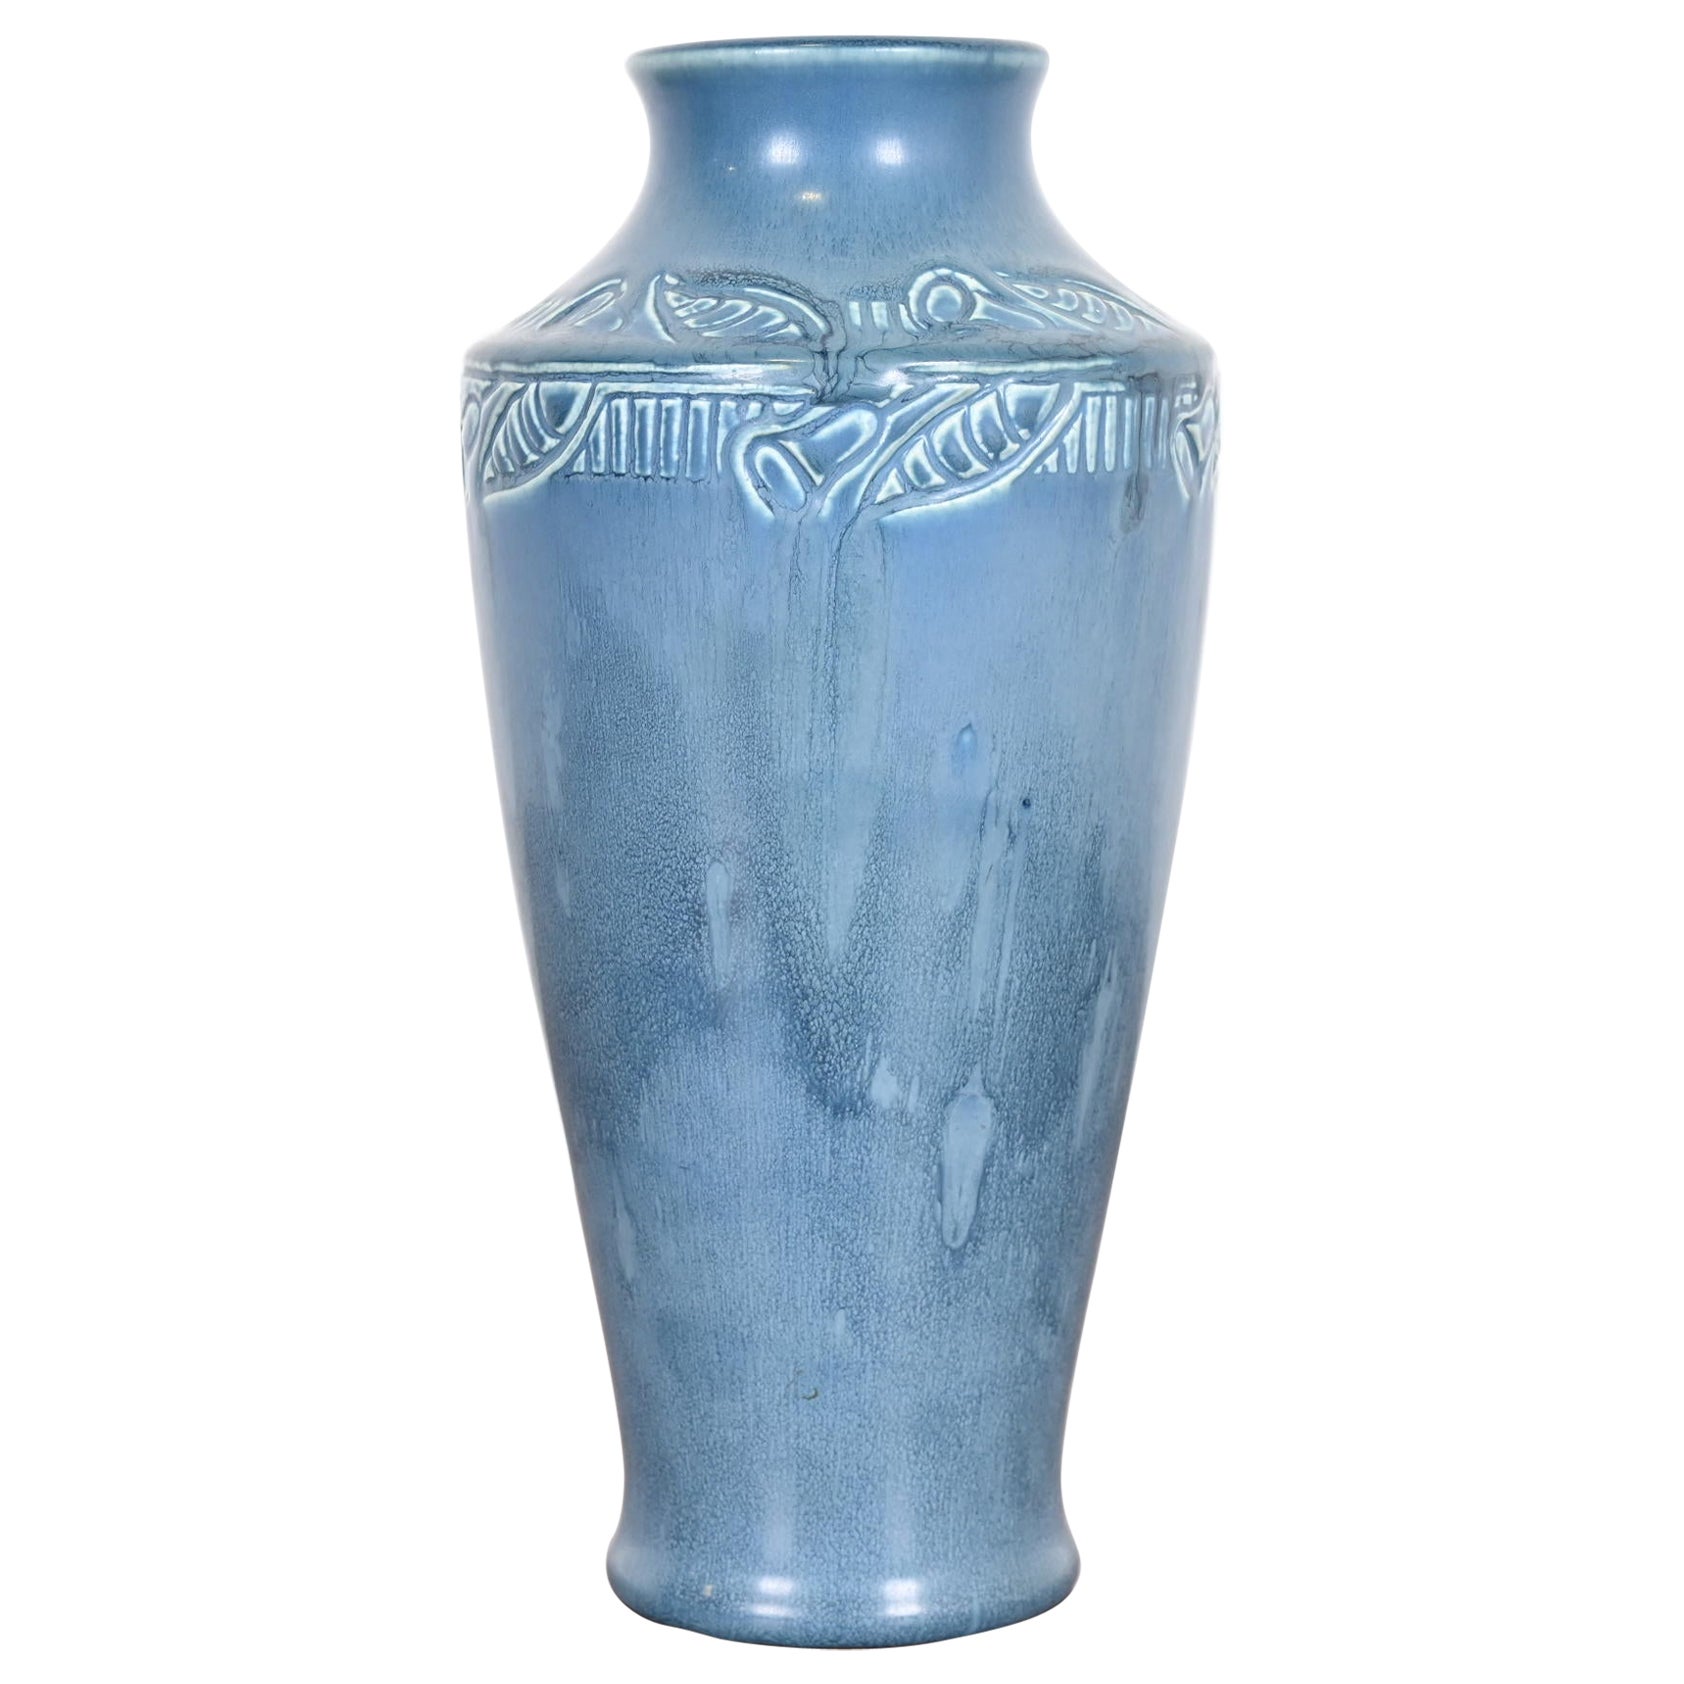 Rookwood Pottery Arts & Crafts Large Glazed Ceramic Floral Decorated Vase, 1919 For Sale